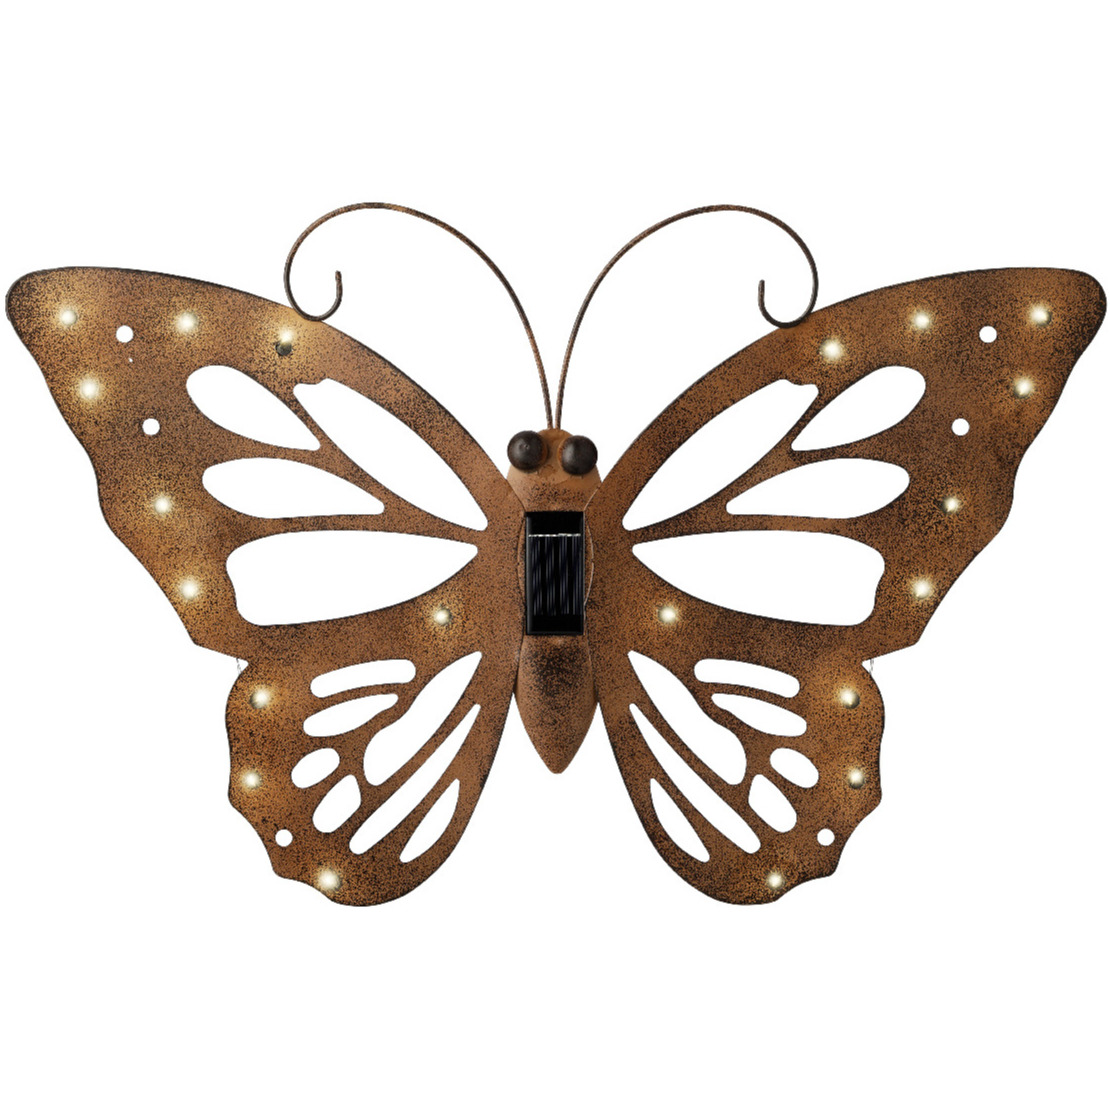 Lumineo tuindecoratie vlinder met solar verlichting 53 x 35 cm roestbruin tuinverlichting